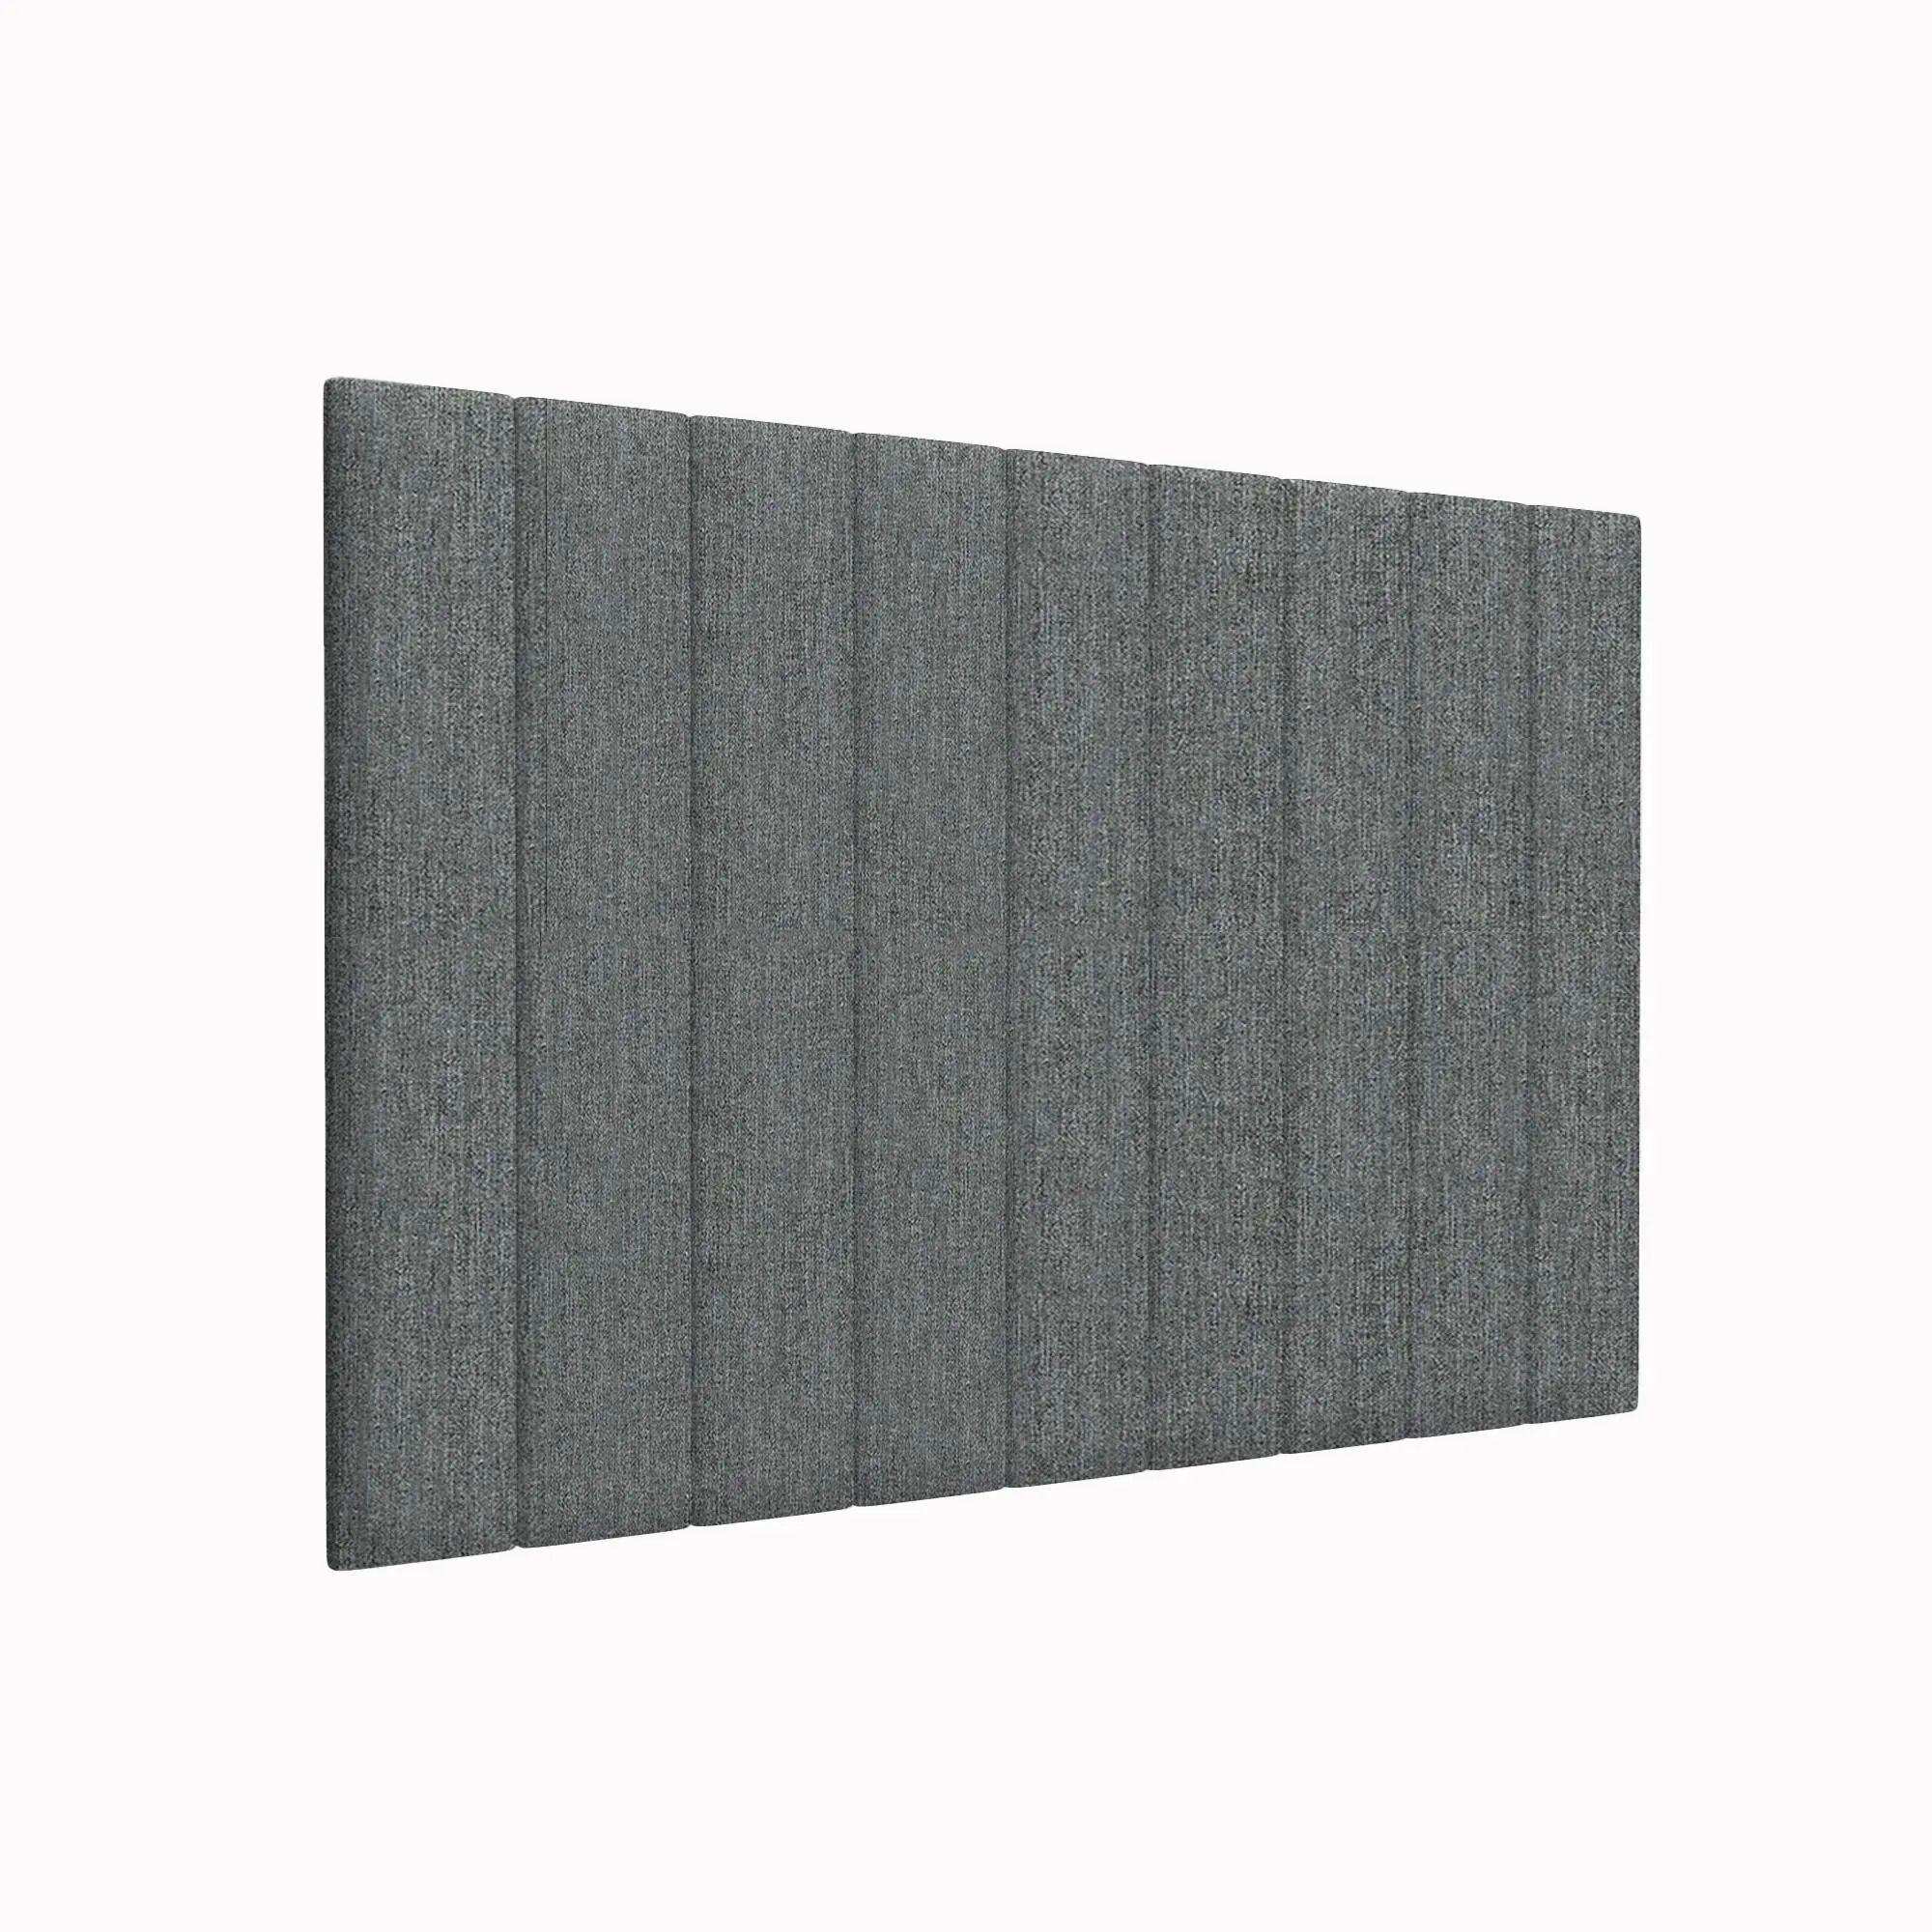 Стеновая панель Cotton Moondust Grey 15х90 см 2 шт.